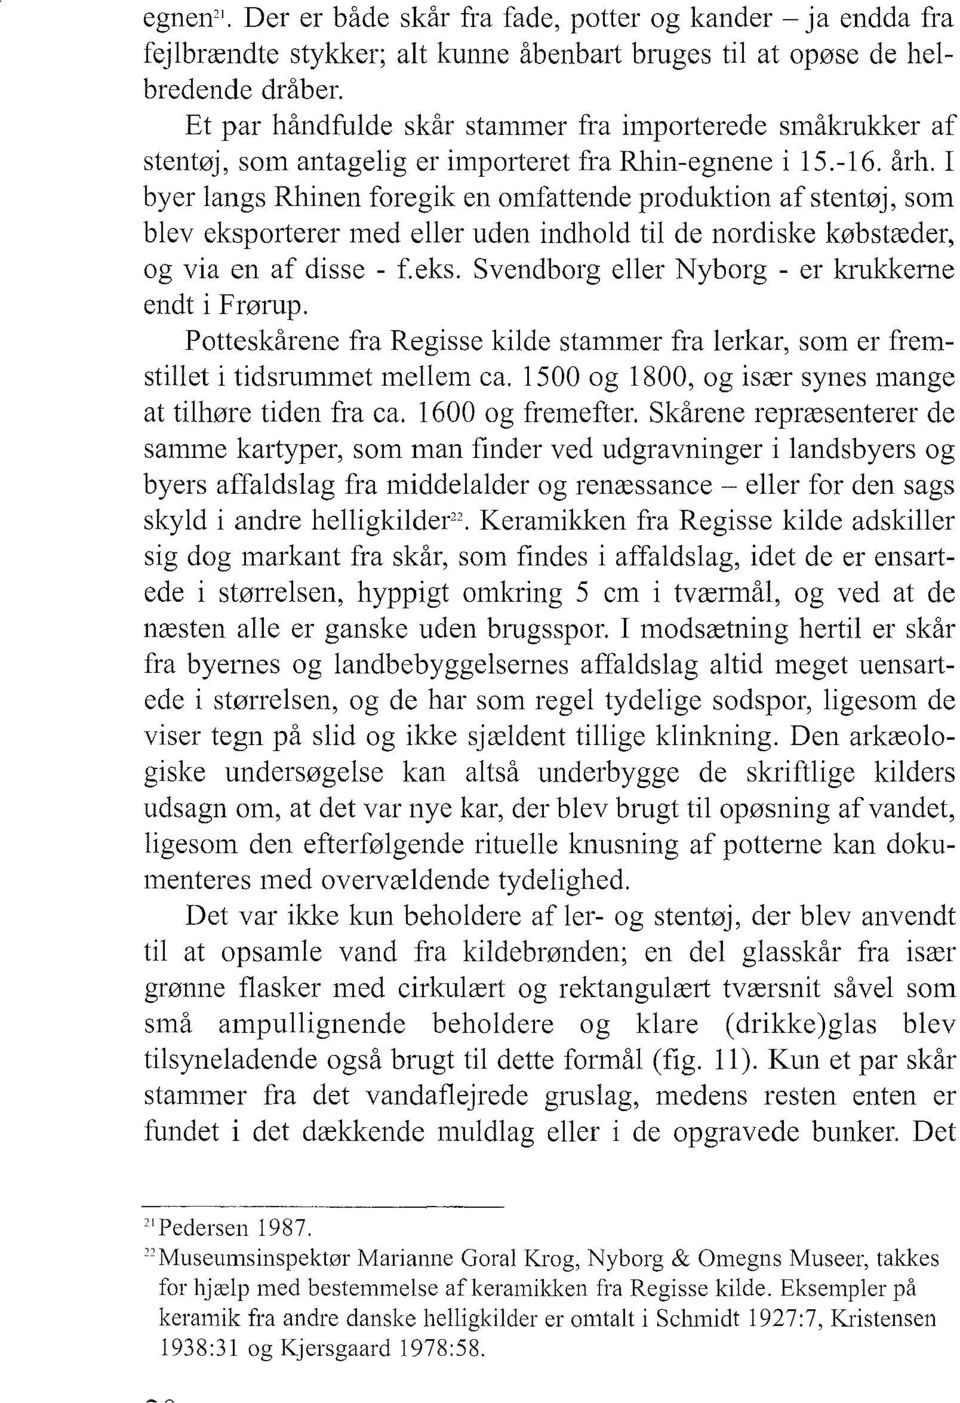 I byer langs Rhinen foregik en omfattende produktion afstentøj, som blev eksporterer med eller uden indhold til de nordiske købstæder, og via en af disse - f.eks. Svendborg eller Nyborg - er klukkerne endt i Frørup.